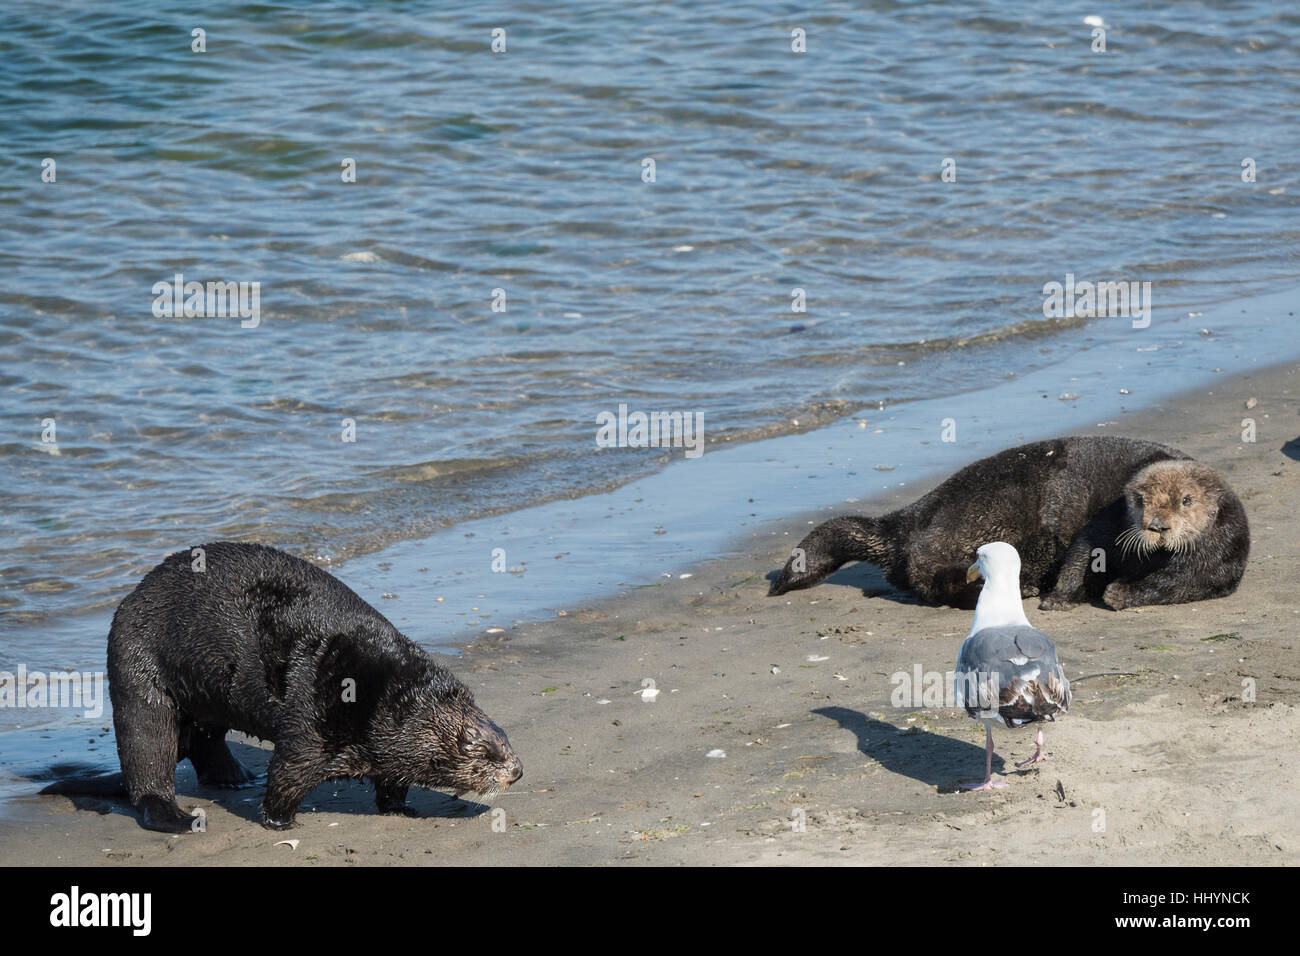 California Sea Otter oder südlichen Seeotter, Enhydra Lutris Nereis, kommt an Land mit anderen Otter und eine Möwe am Strand sonnen Elkhorn Slough Stockfoto